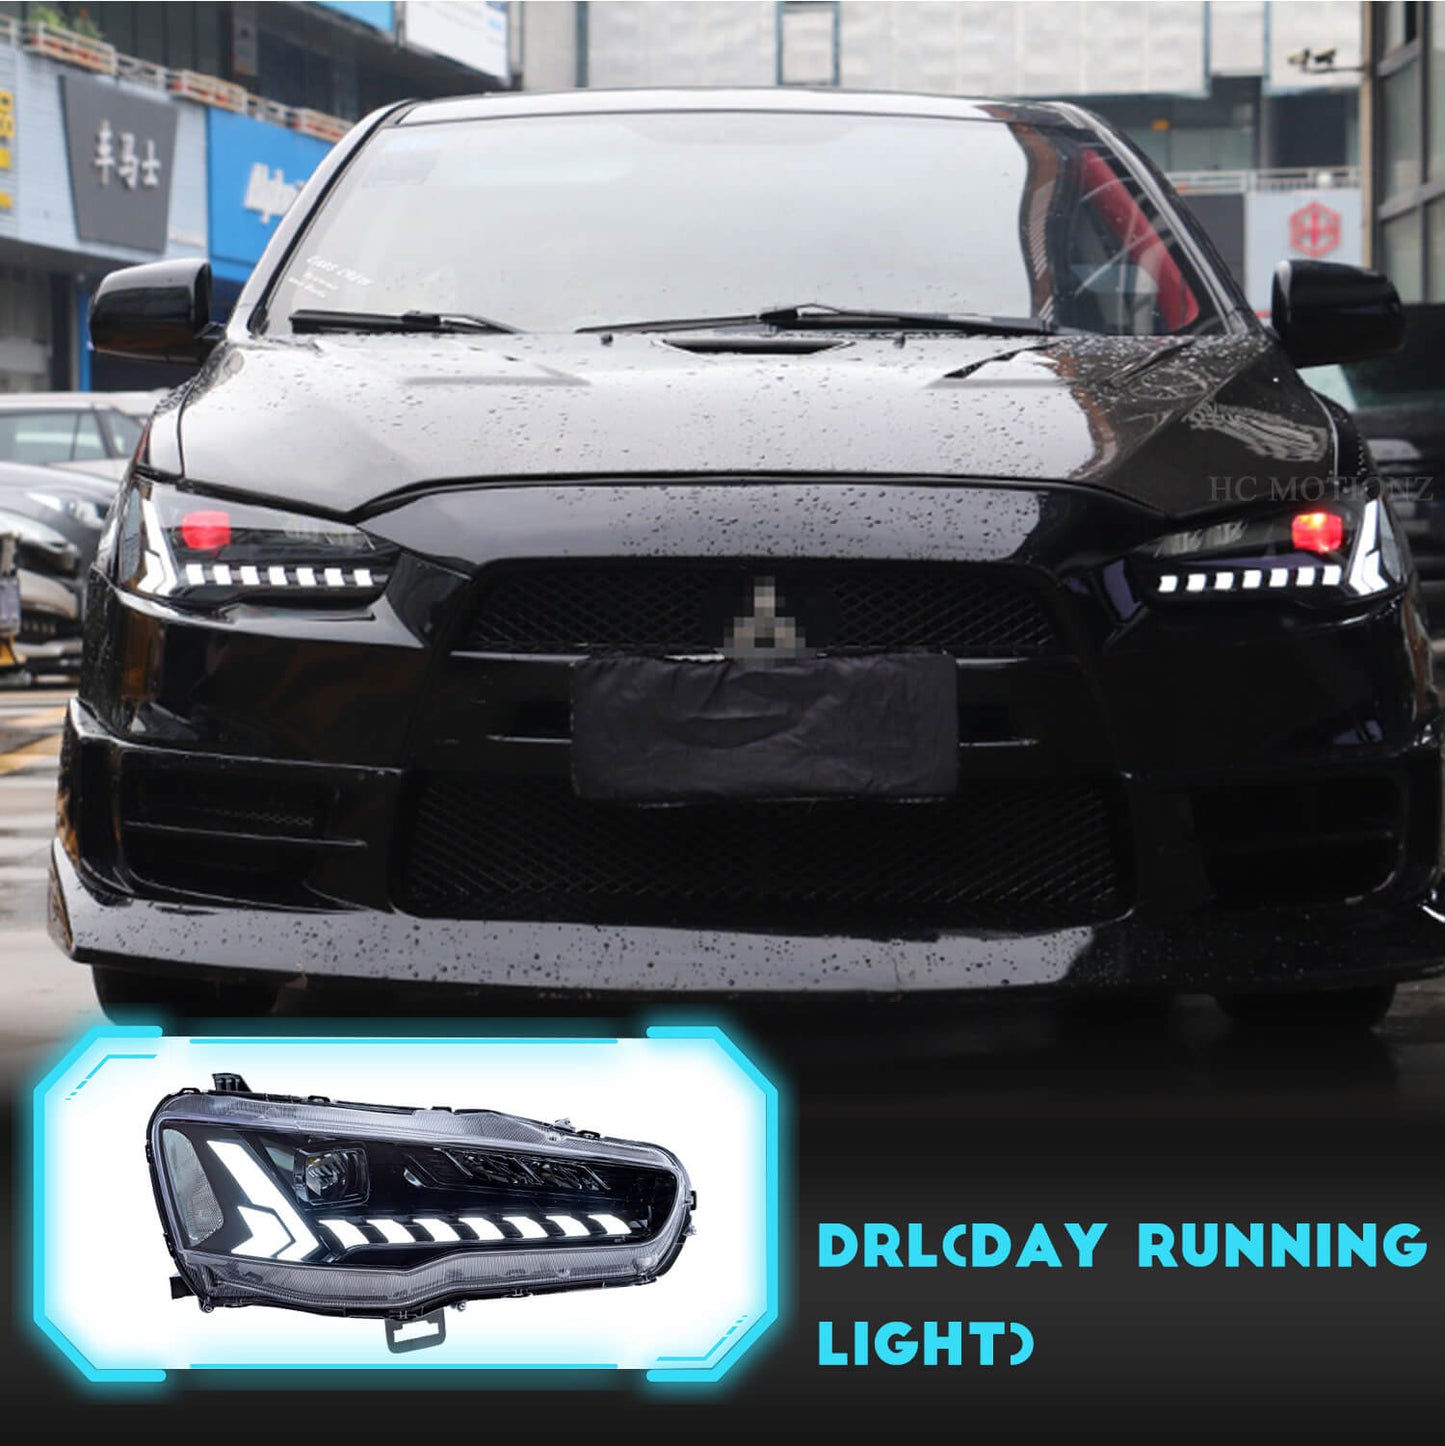 HCMOTION LED Headlights For Mitsubishi Lancer 2008-2017 Demon eyes